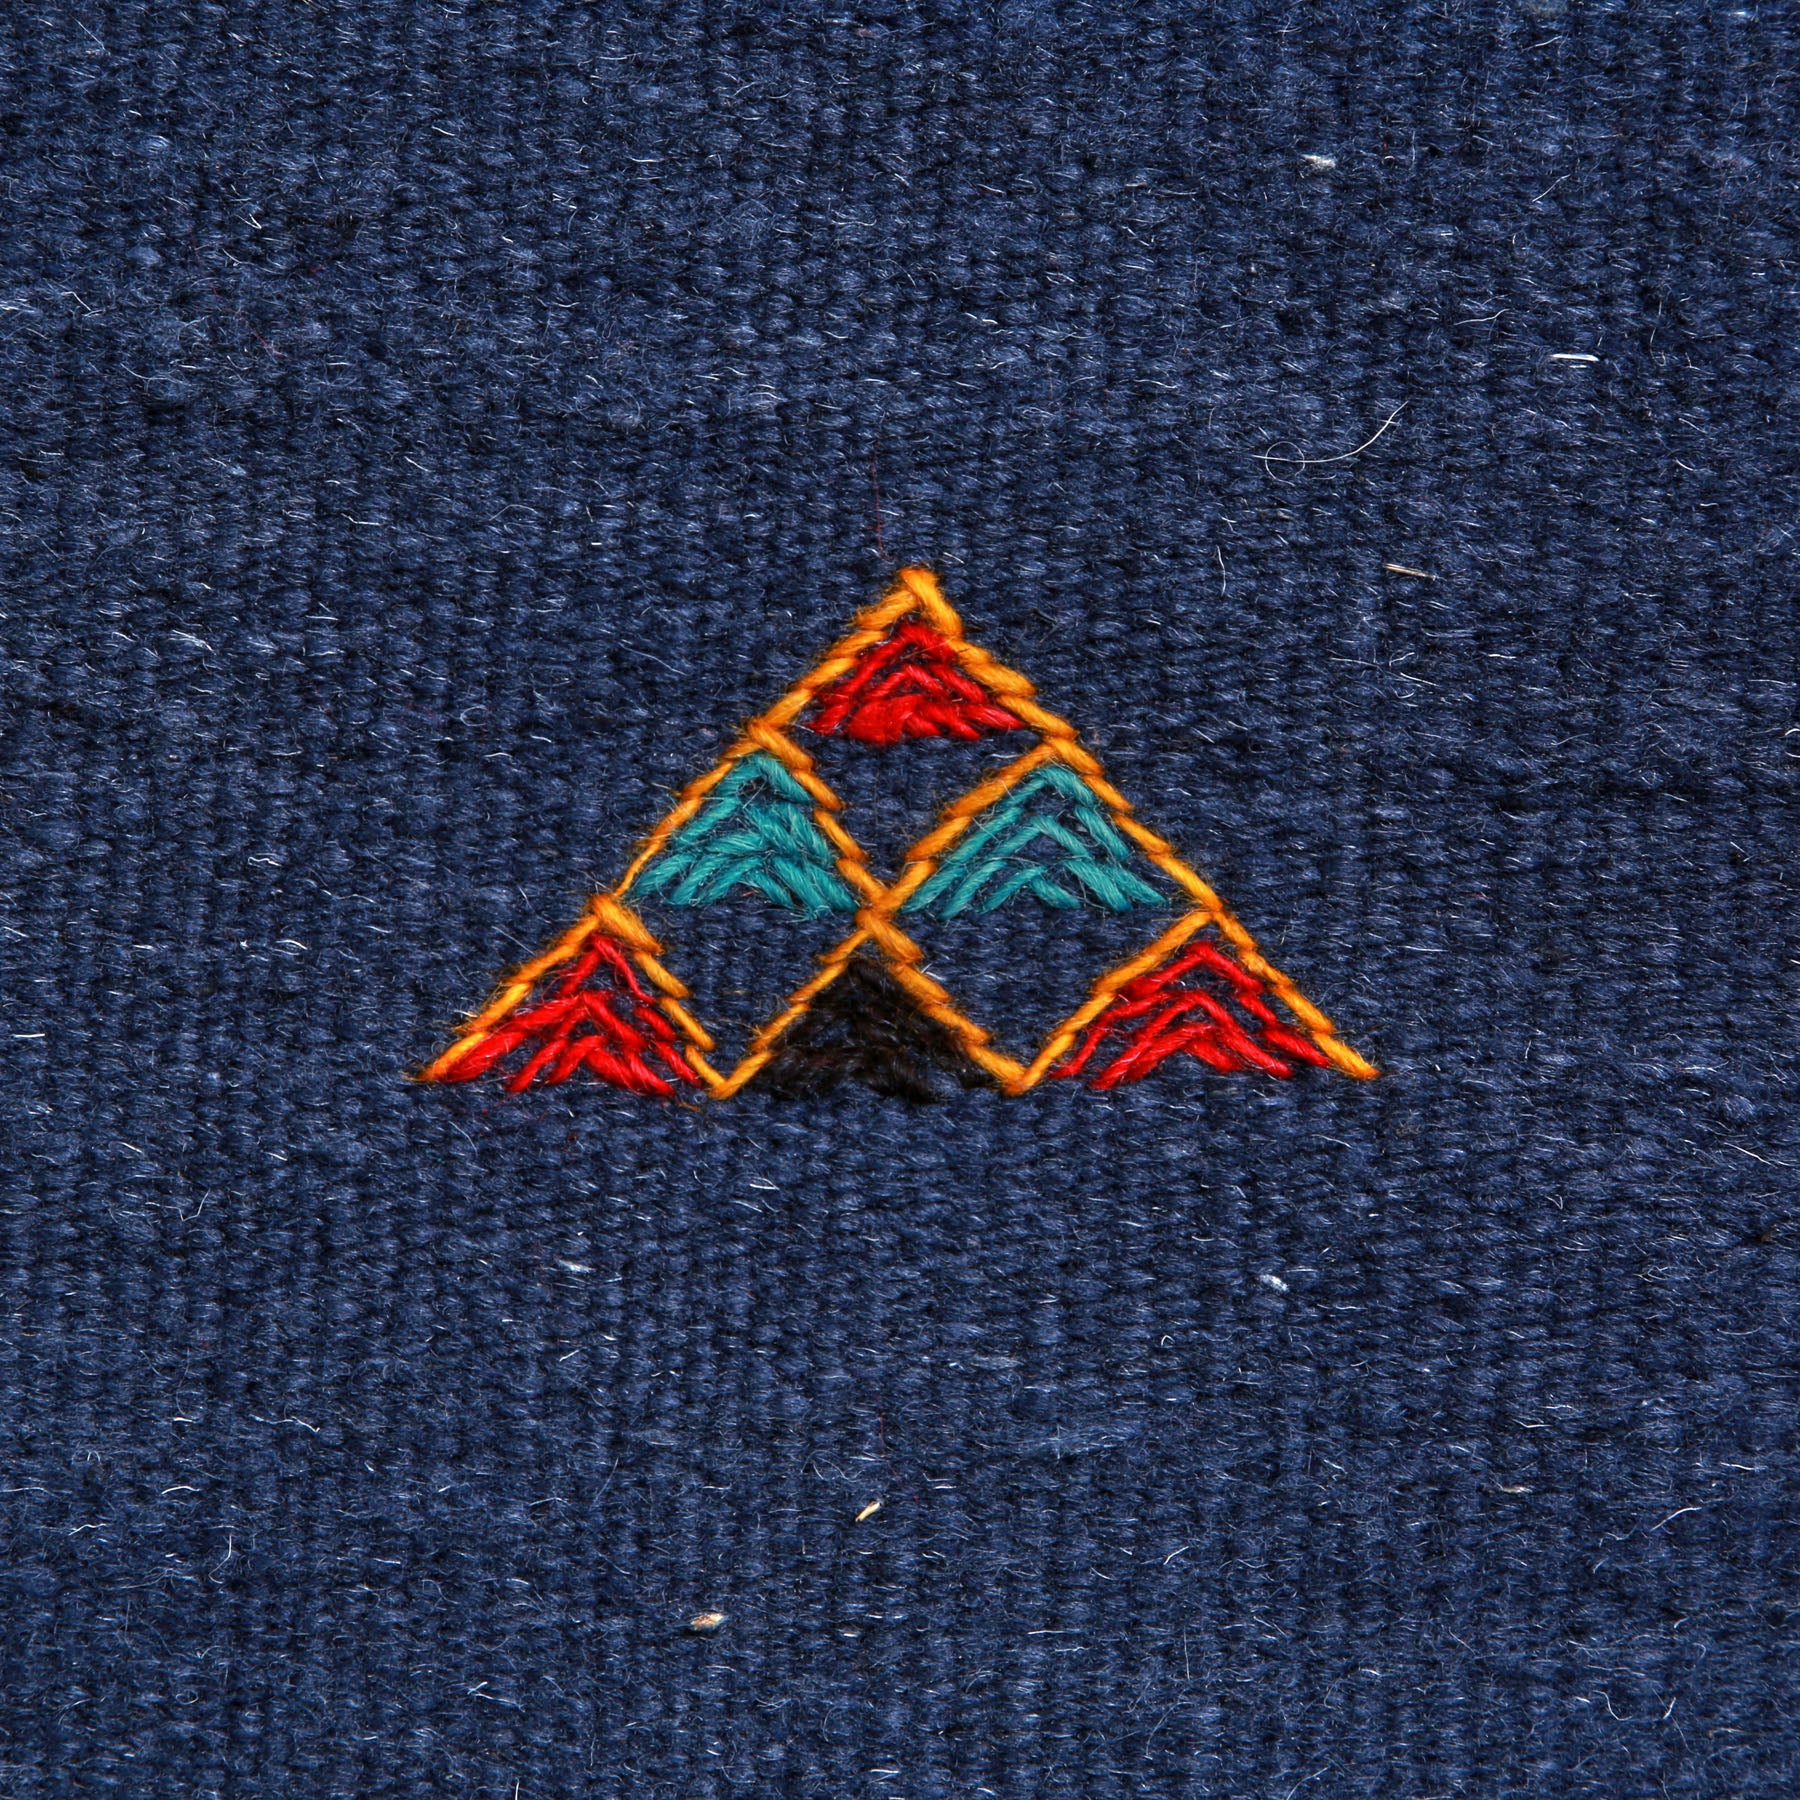 dettaglio di un simbolo amazigh a forma di piramide ricamato su un tappeto artigianale marocchino a tessitura piatta blu